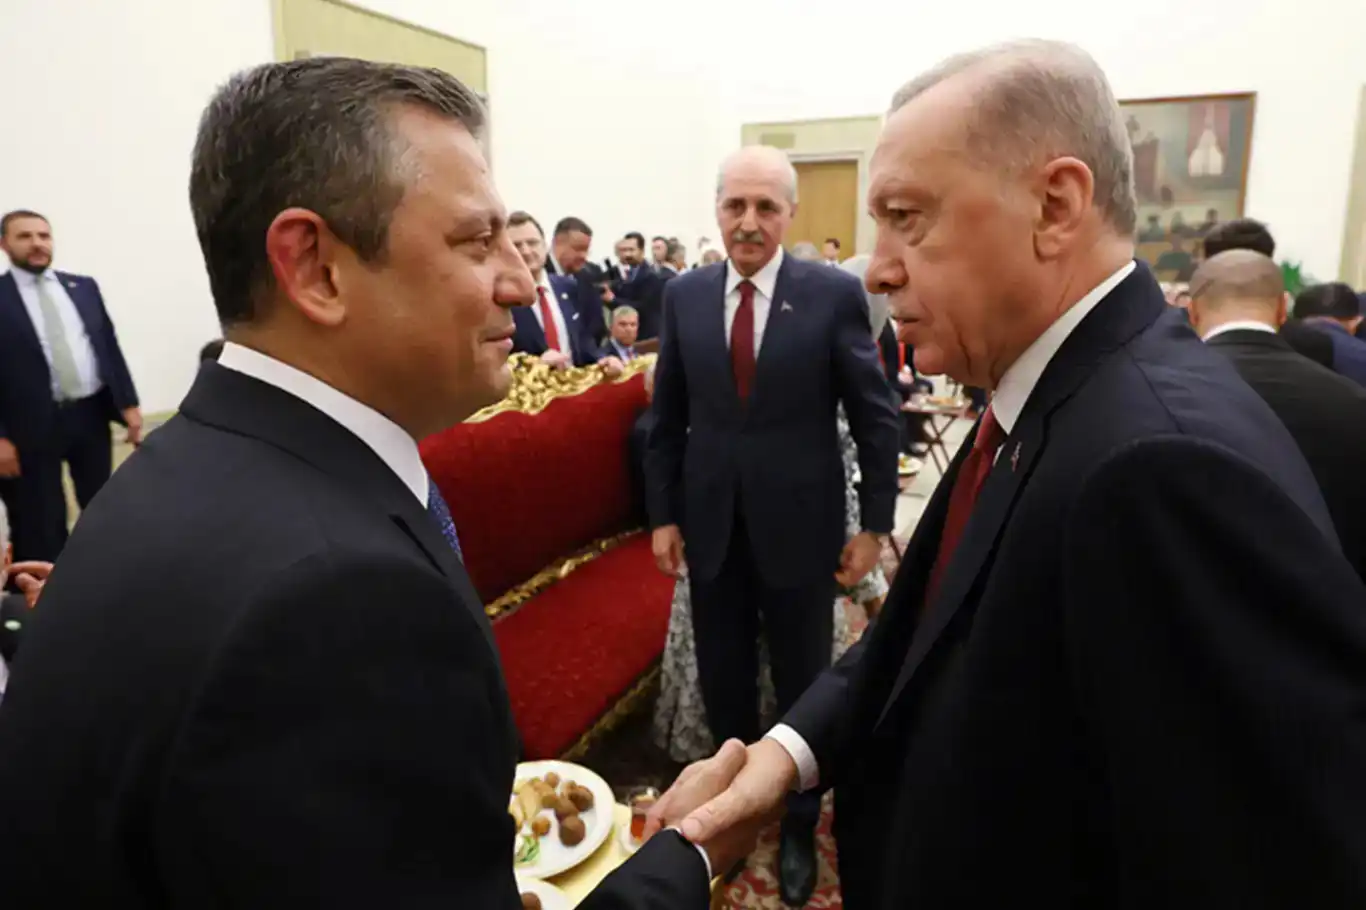 Cumhurbaşkanı Erdoğan, Özel’i bugün kabul edecek